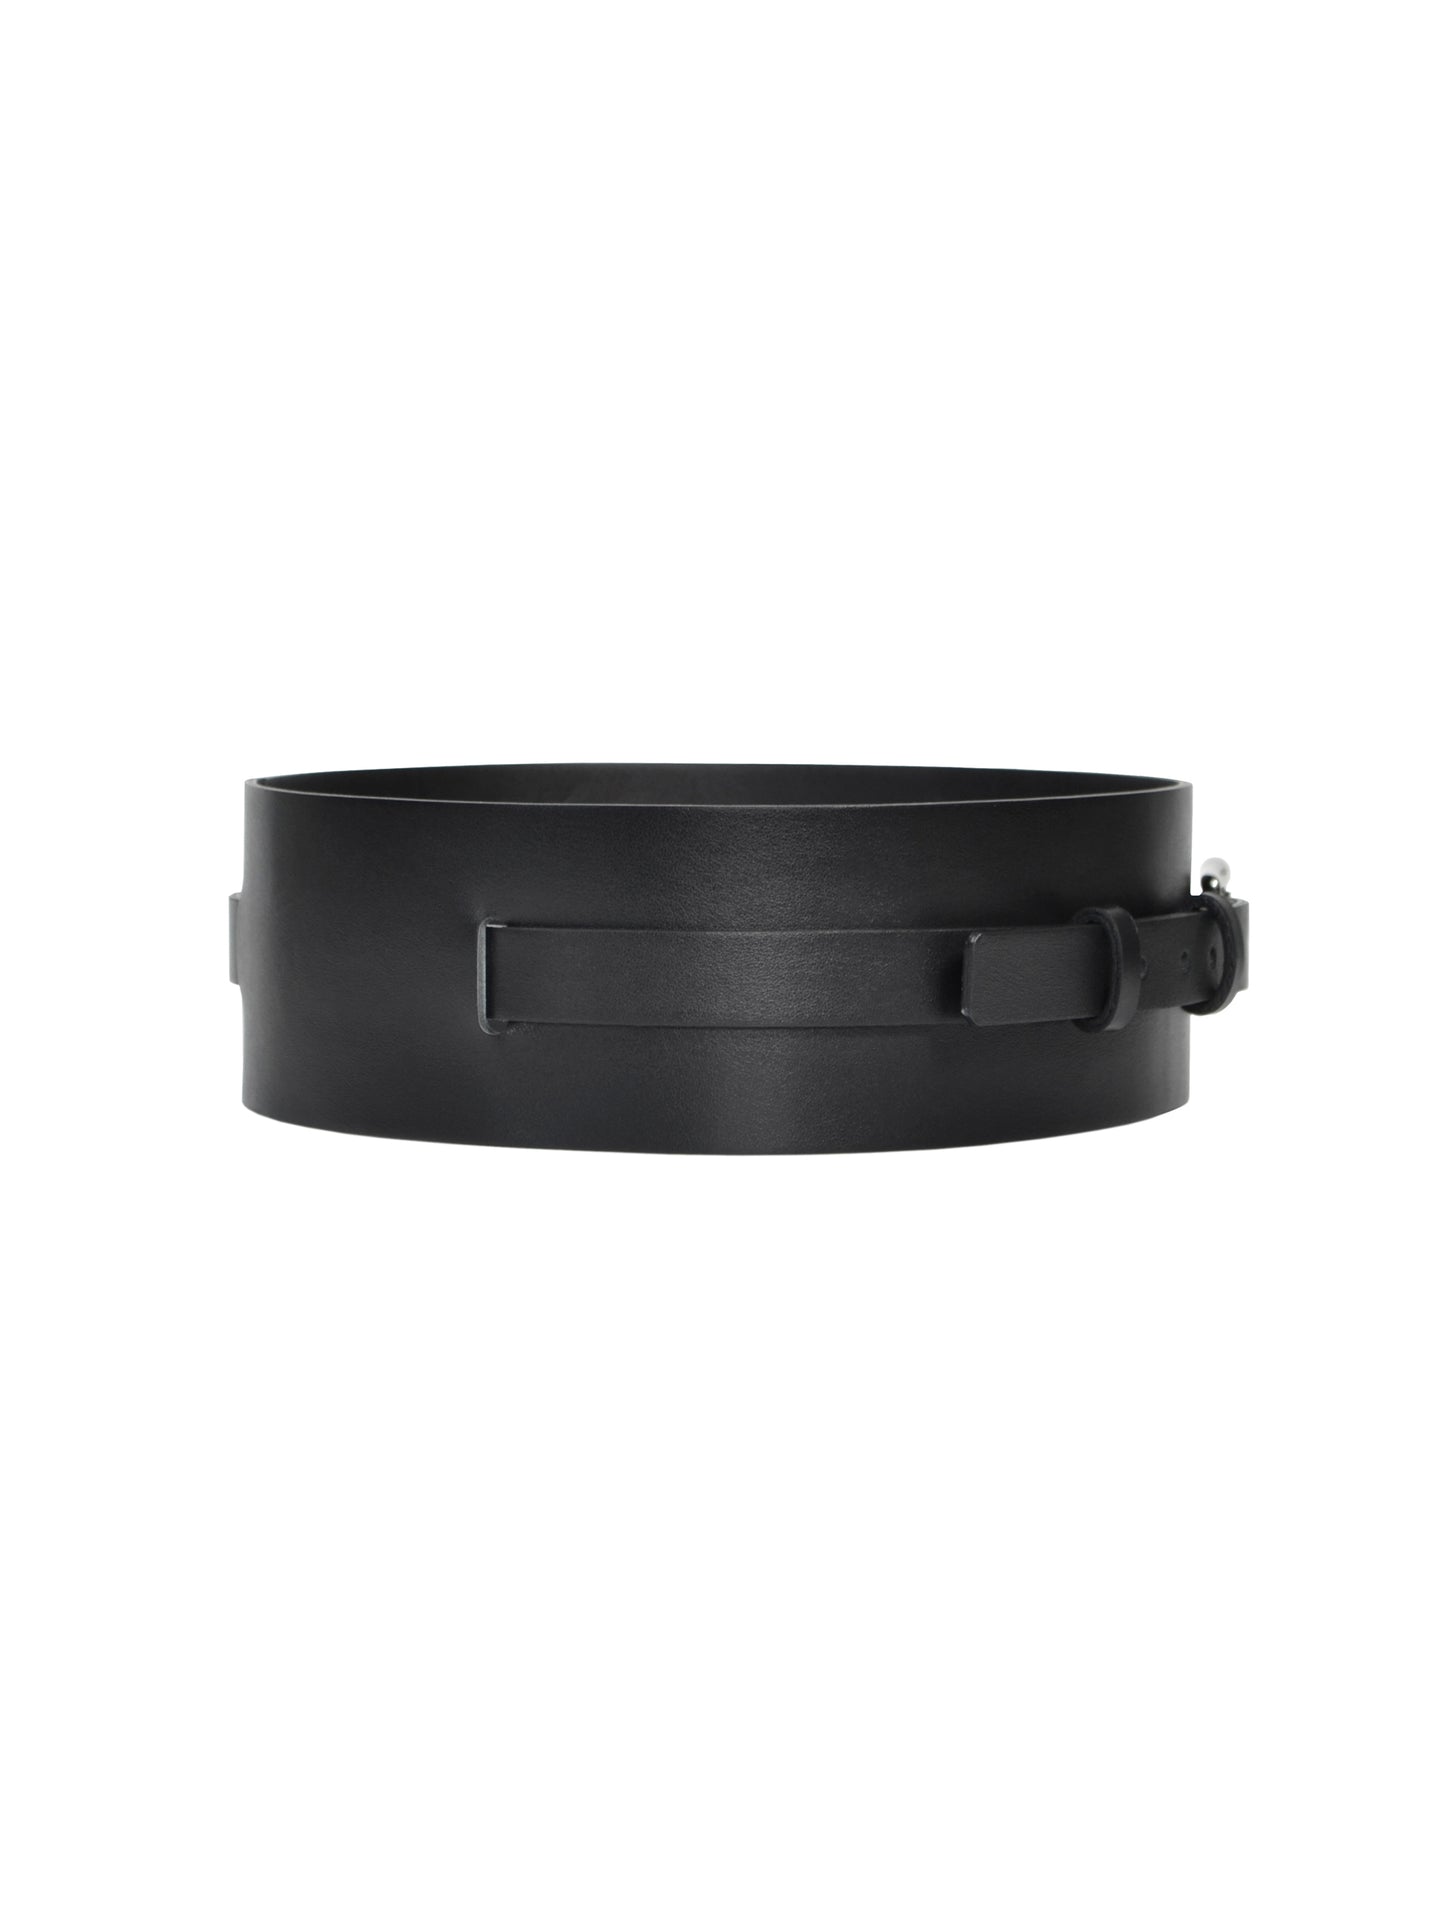 Side view of black high waist belt.